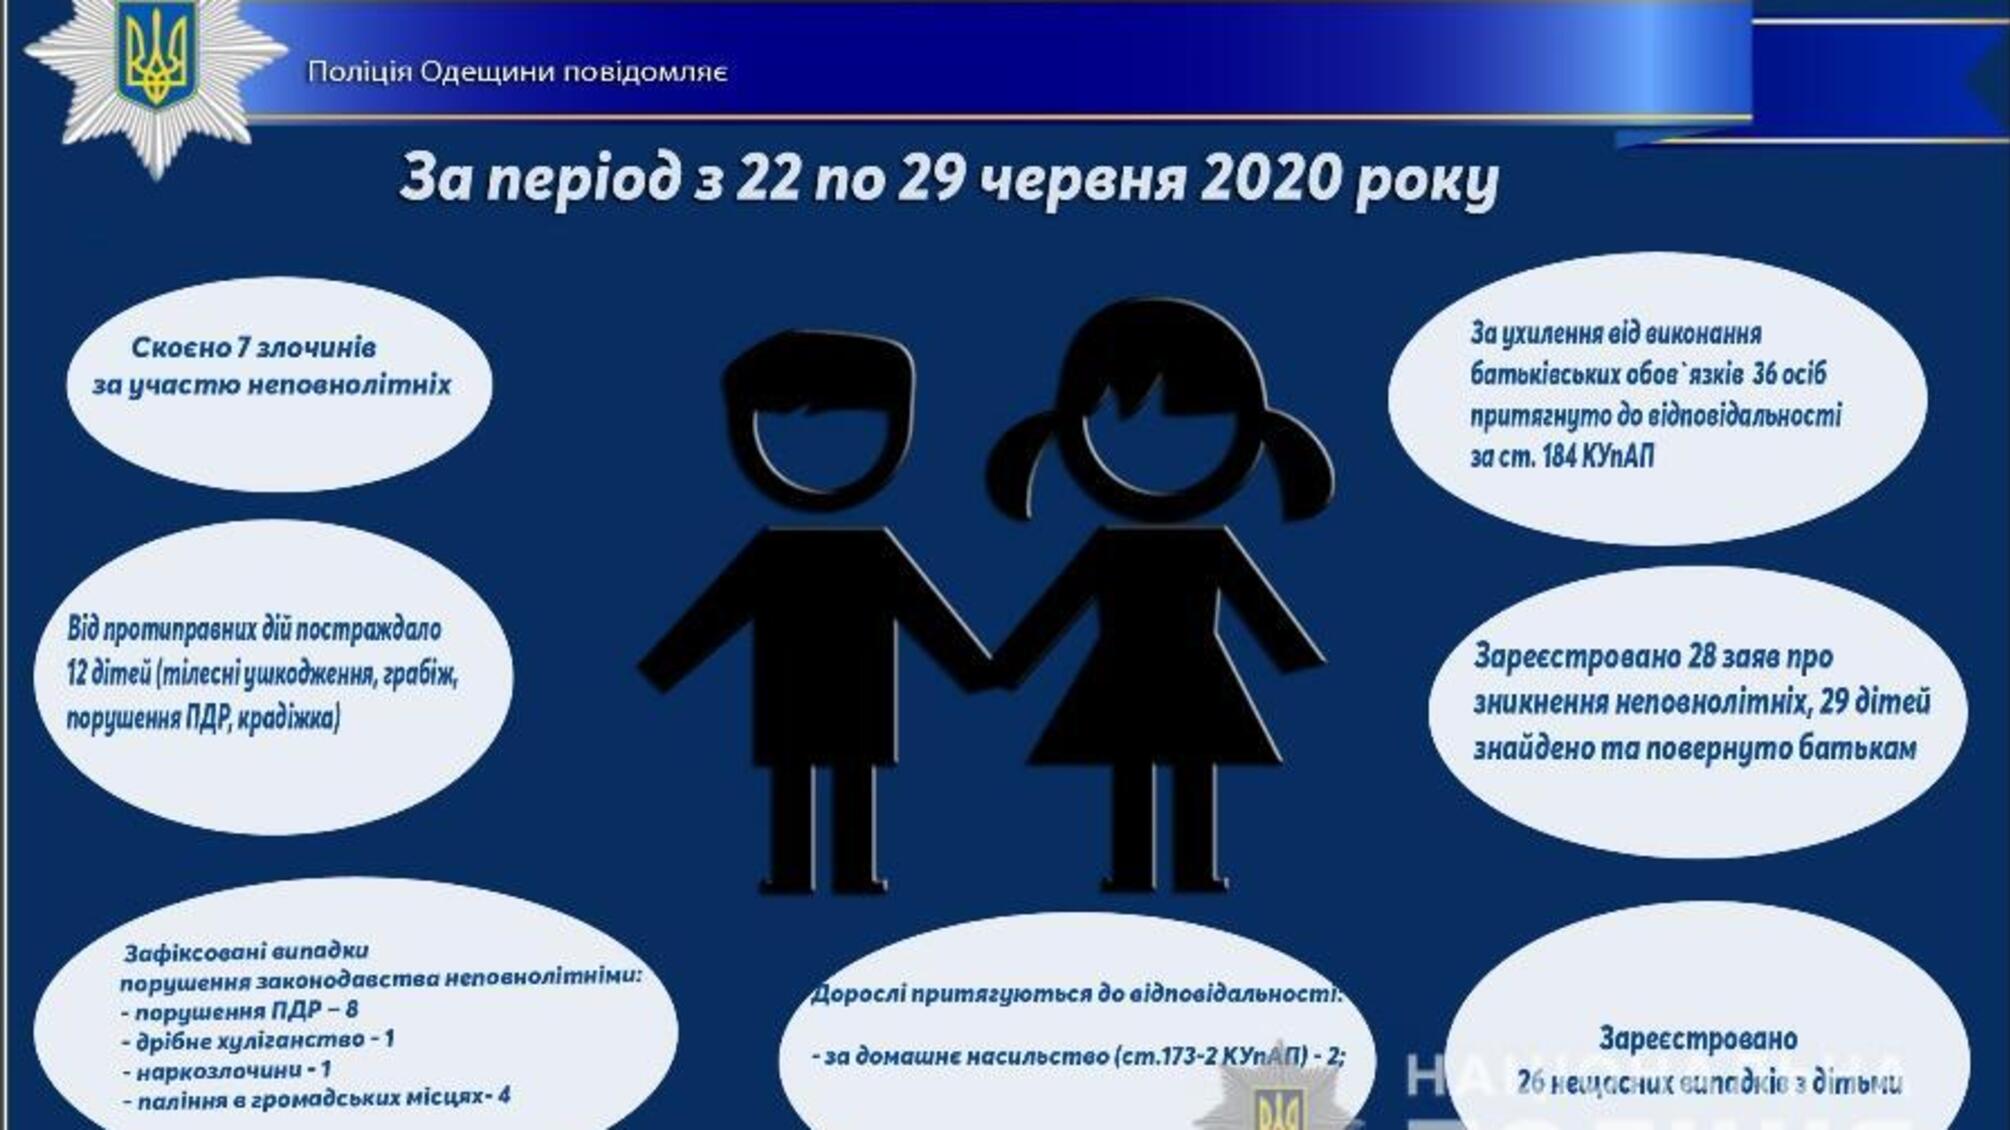 Про стан роботи поліції Одещини з протидії порушенням законодавства неповнолітніми та відносно них за період з 22 по 29 червня 2020 року